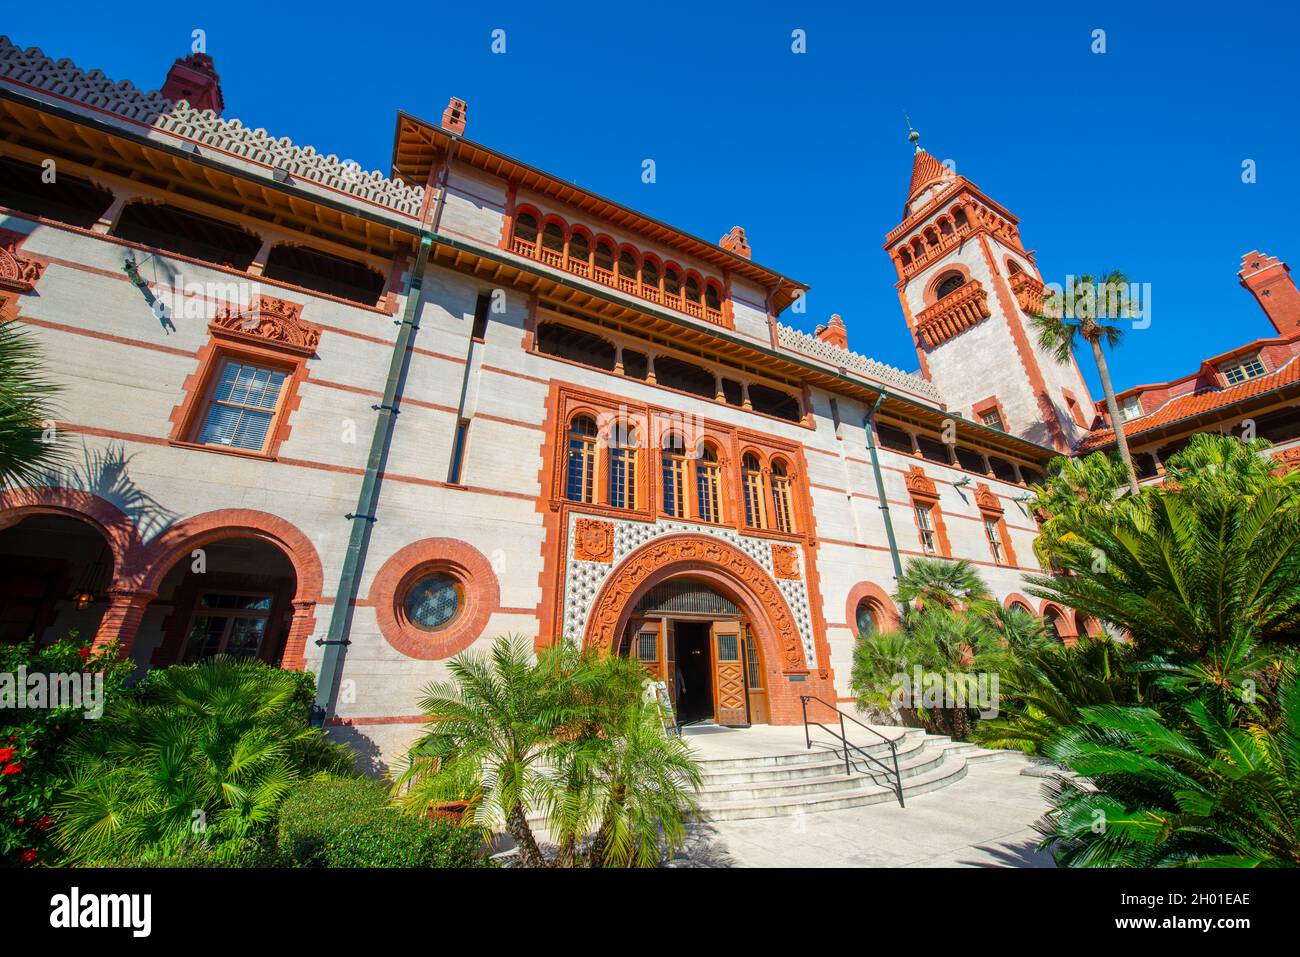 Flagler College Ponce de Leon Hall est le bâtiment principal de Flagler College dans la ville historique de St. Augustine, Floride FL, États-Unis.Ce bâtiment était Ponce de Leon Banque D'Images